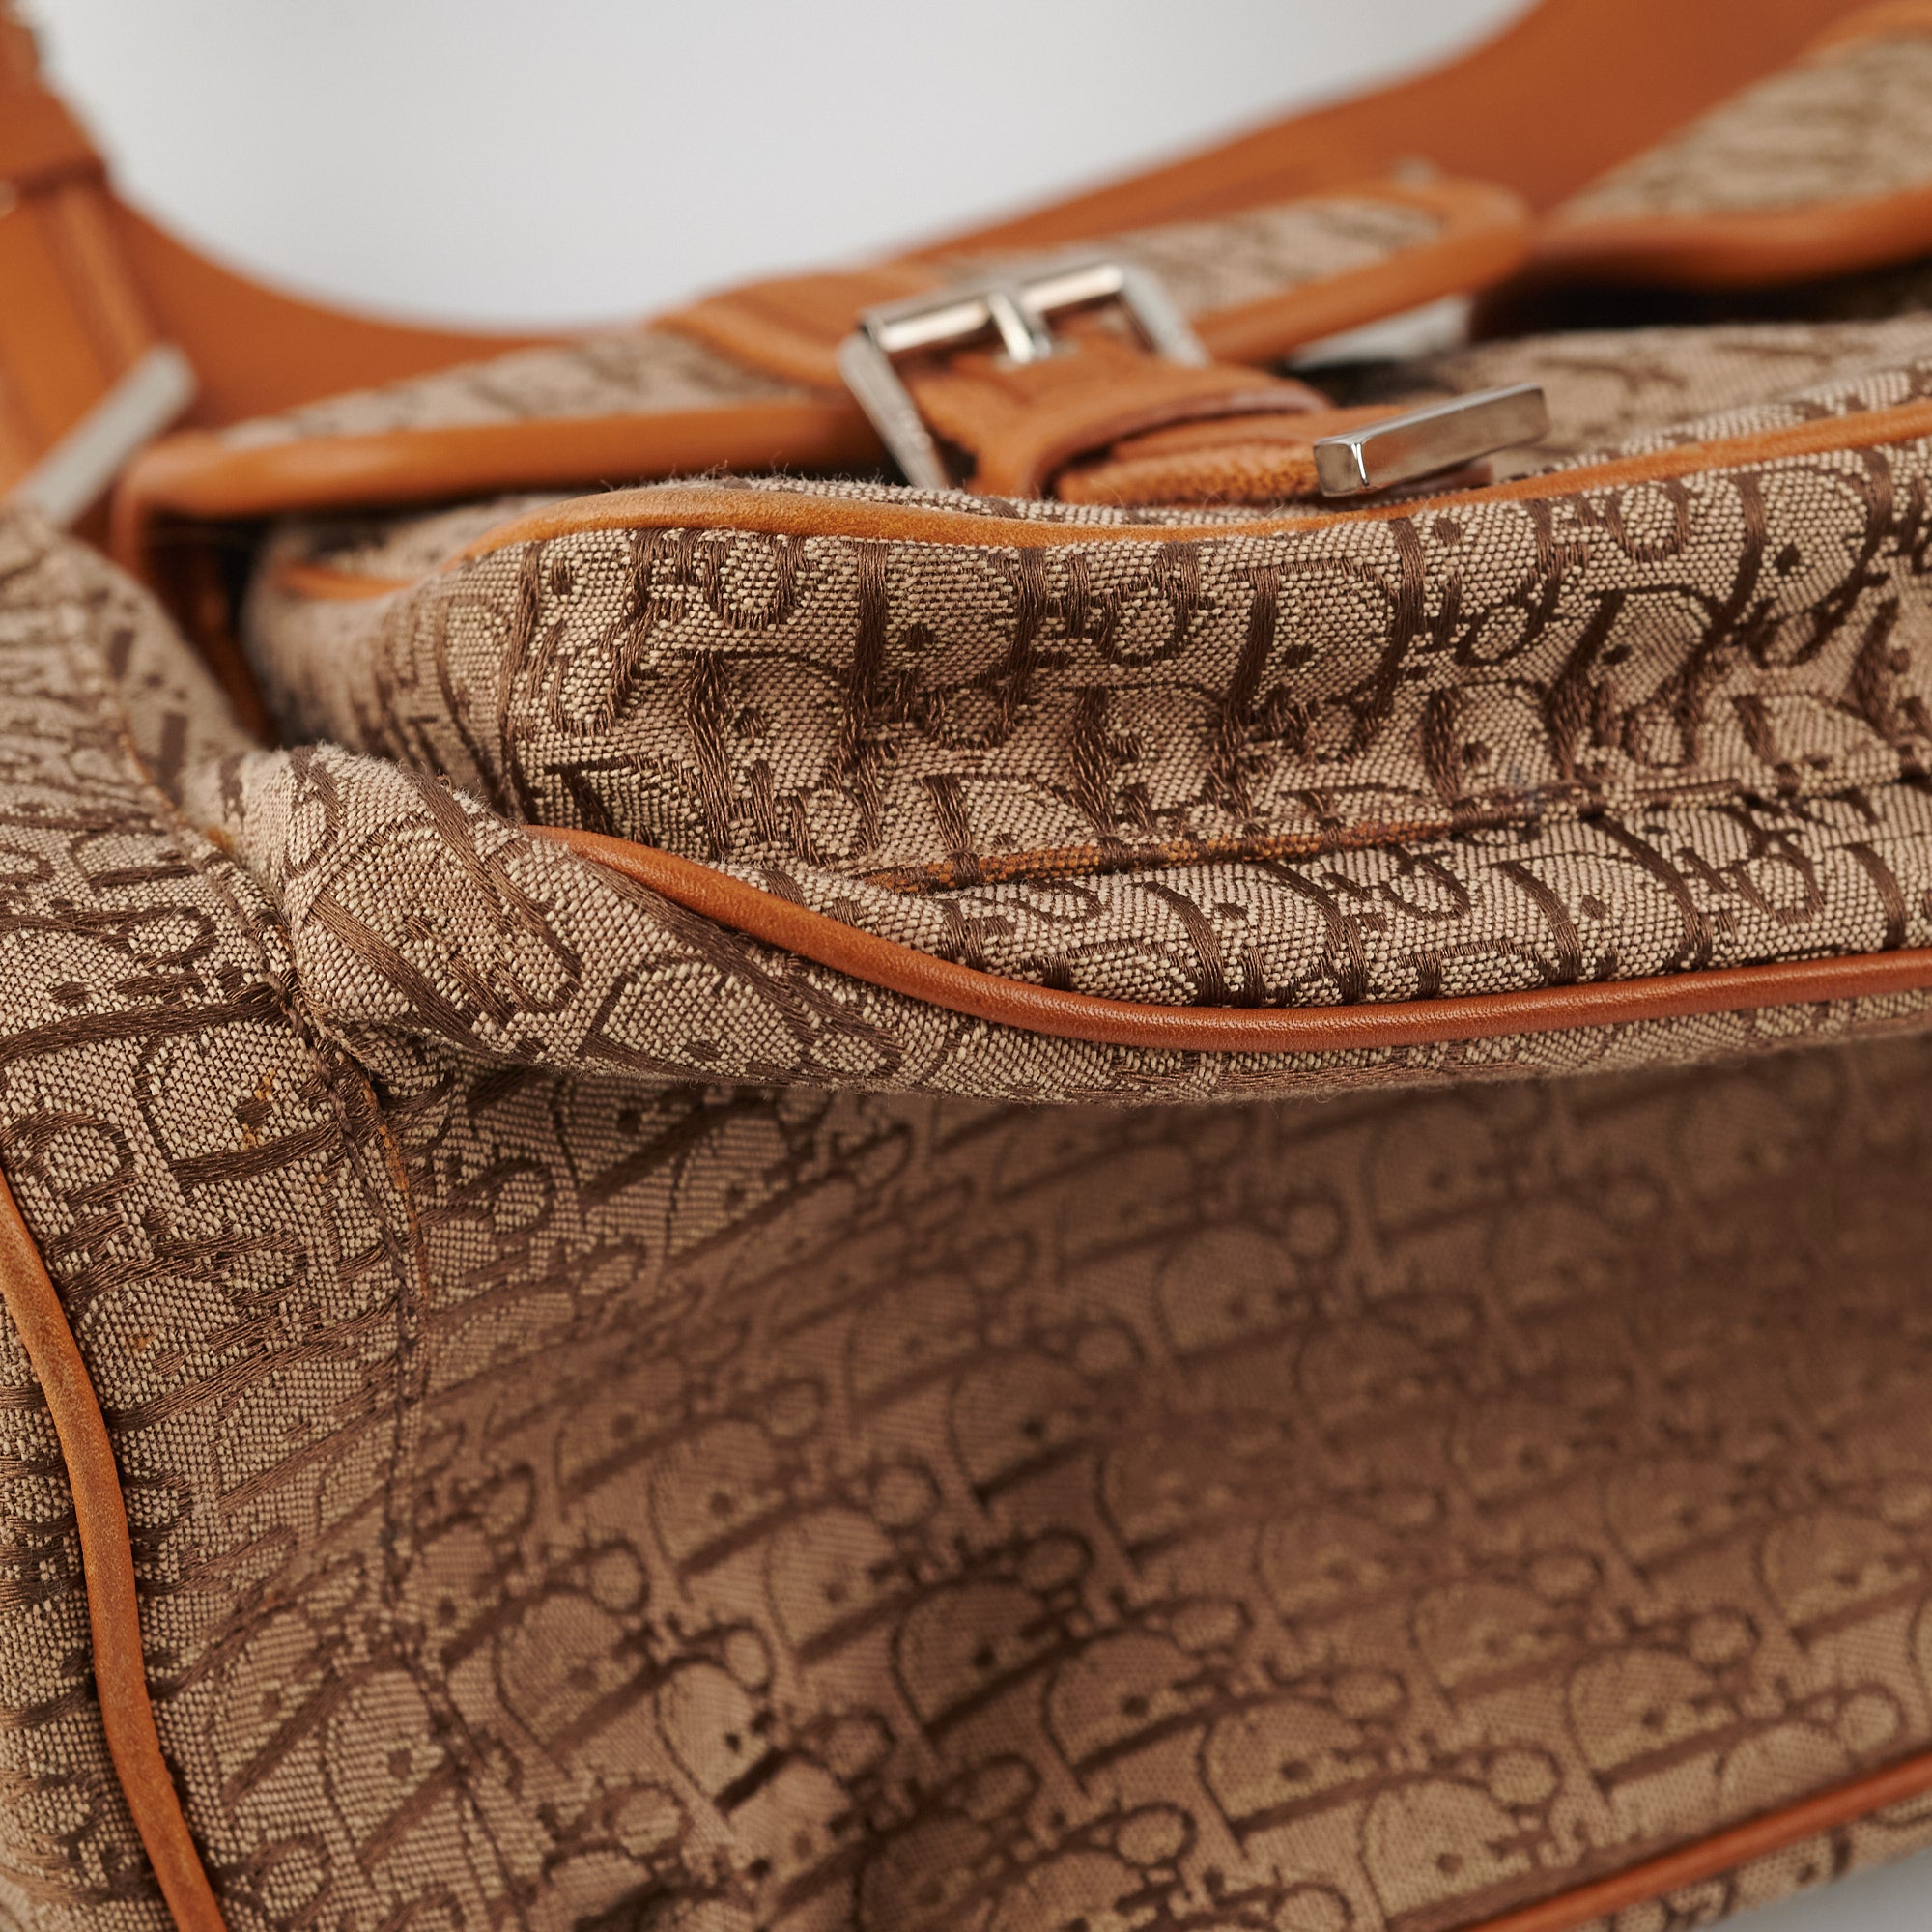 Christian Dior Diorissimo Garment Bag - Brown Luggage and Travel, Handbags  - CHR49495